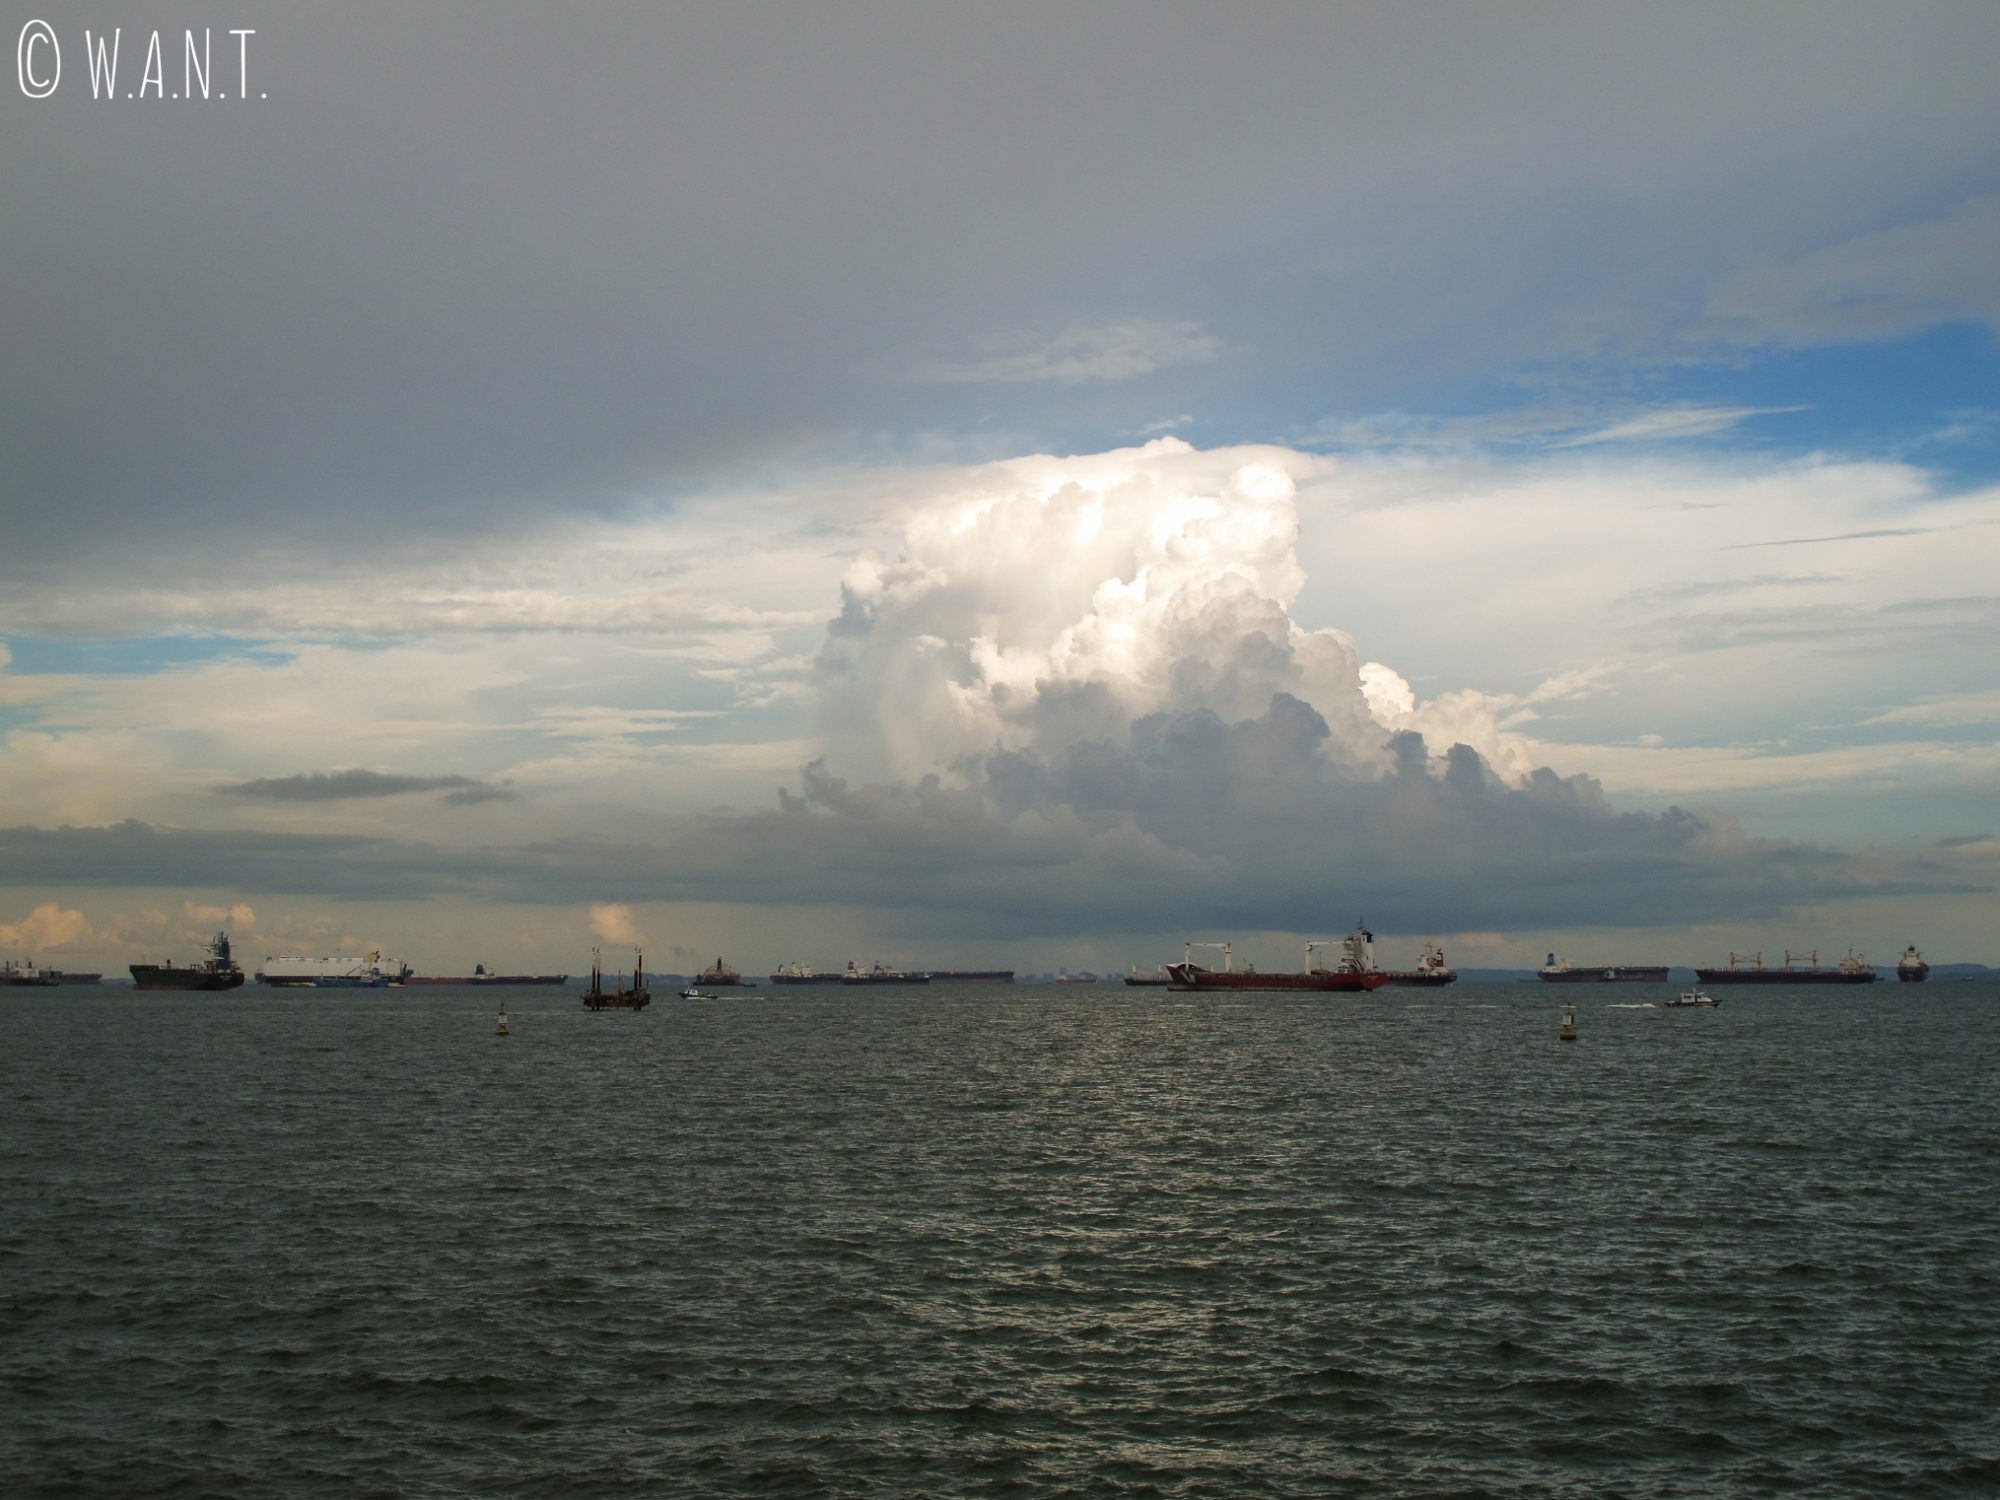 Cargos dans la mer de Chine méridionale, de l'autre côté du barrage de Singapour